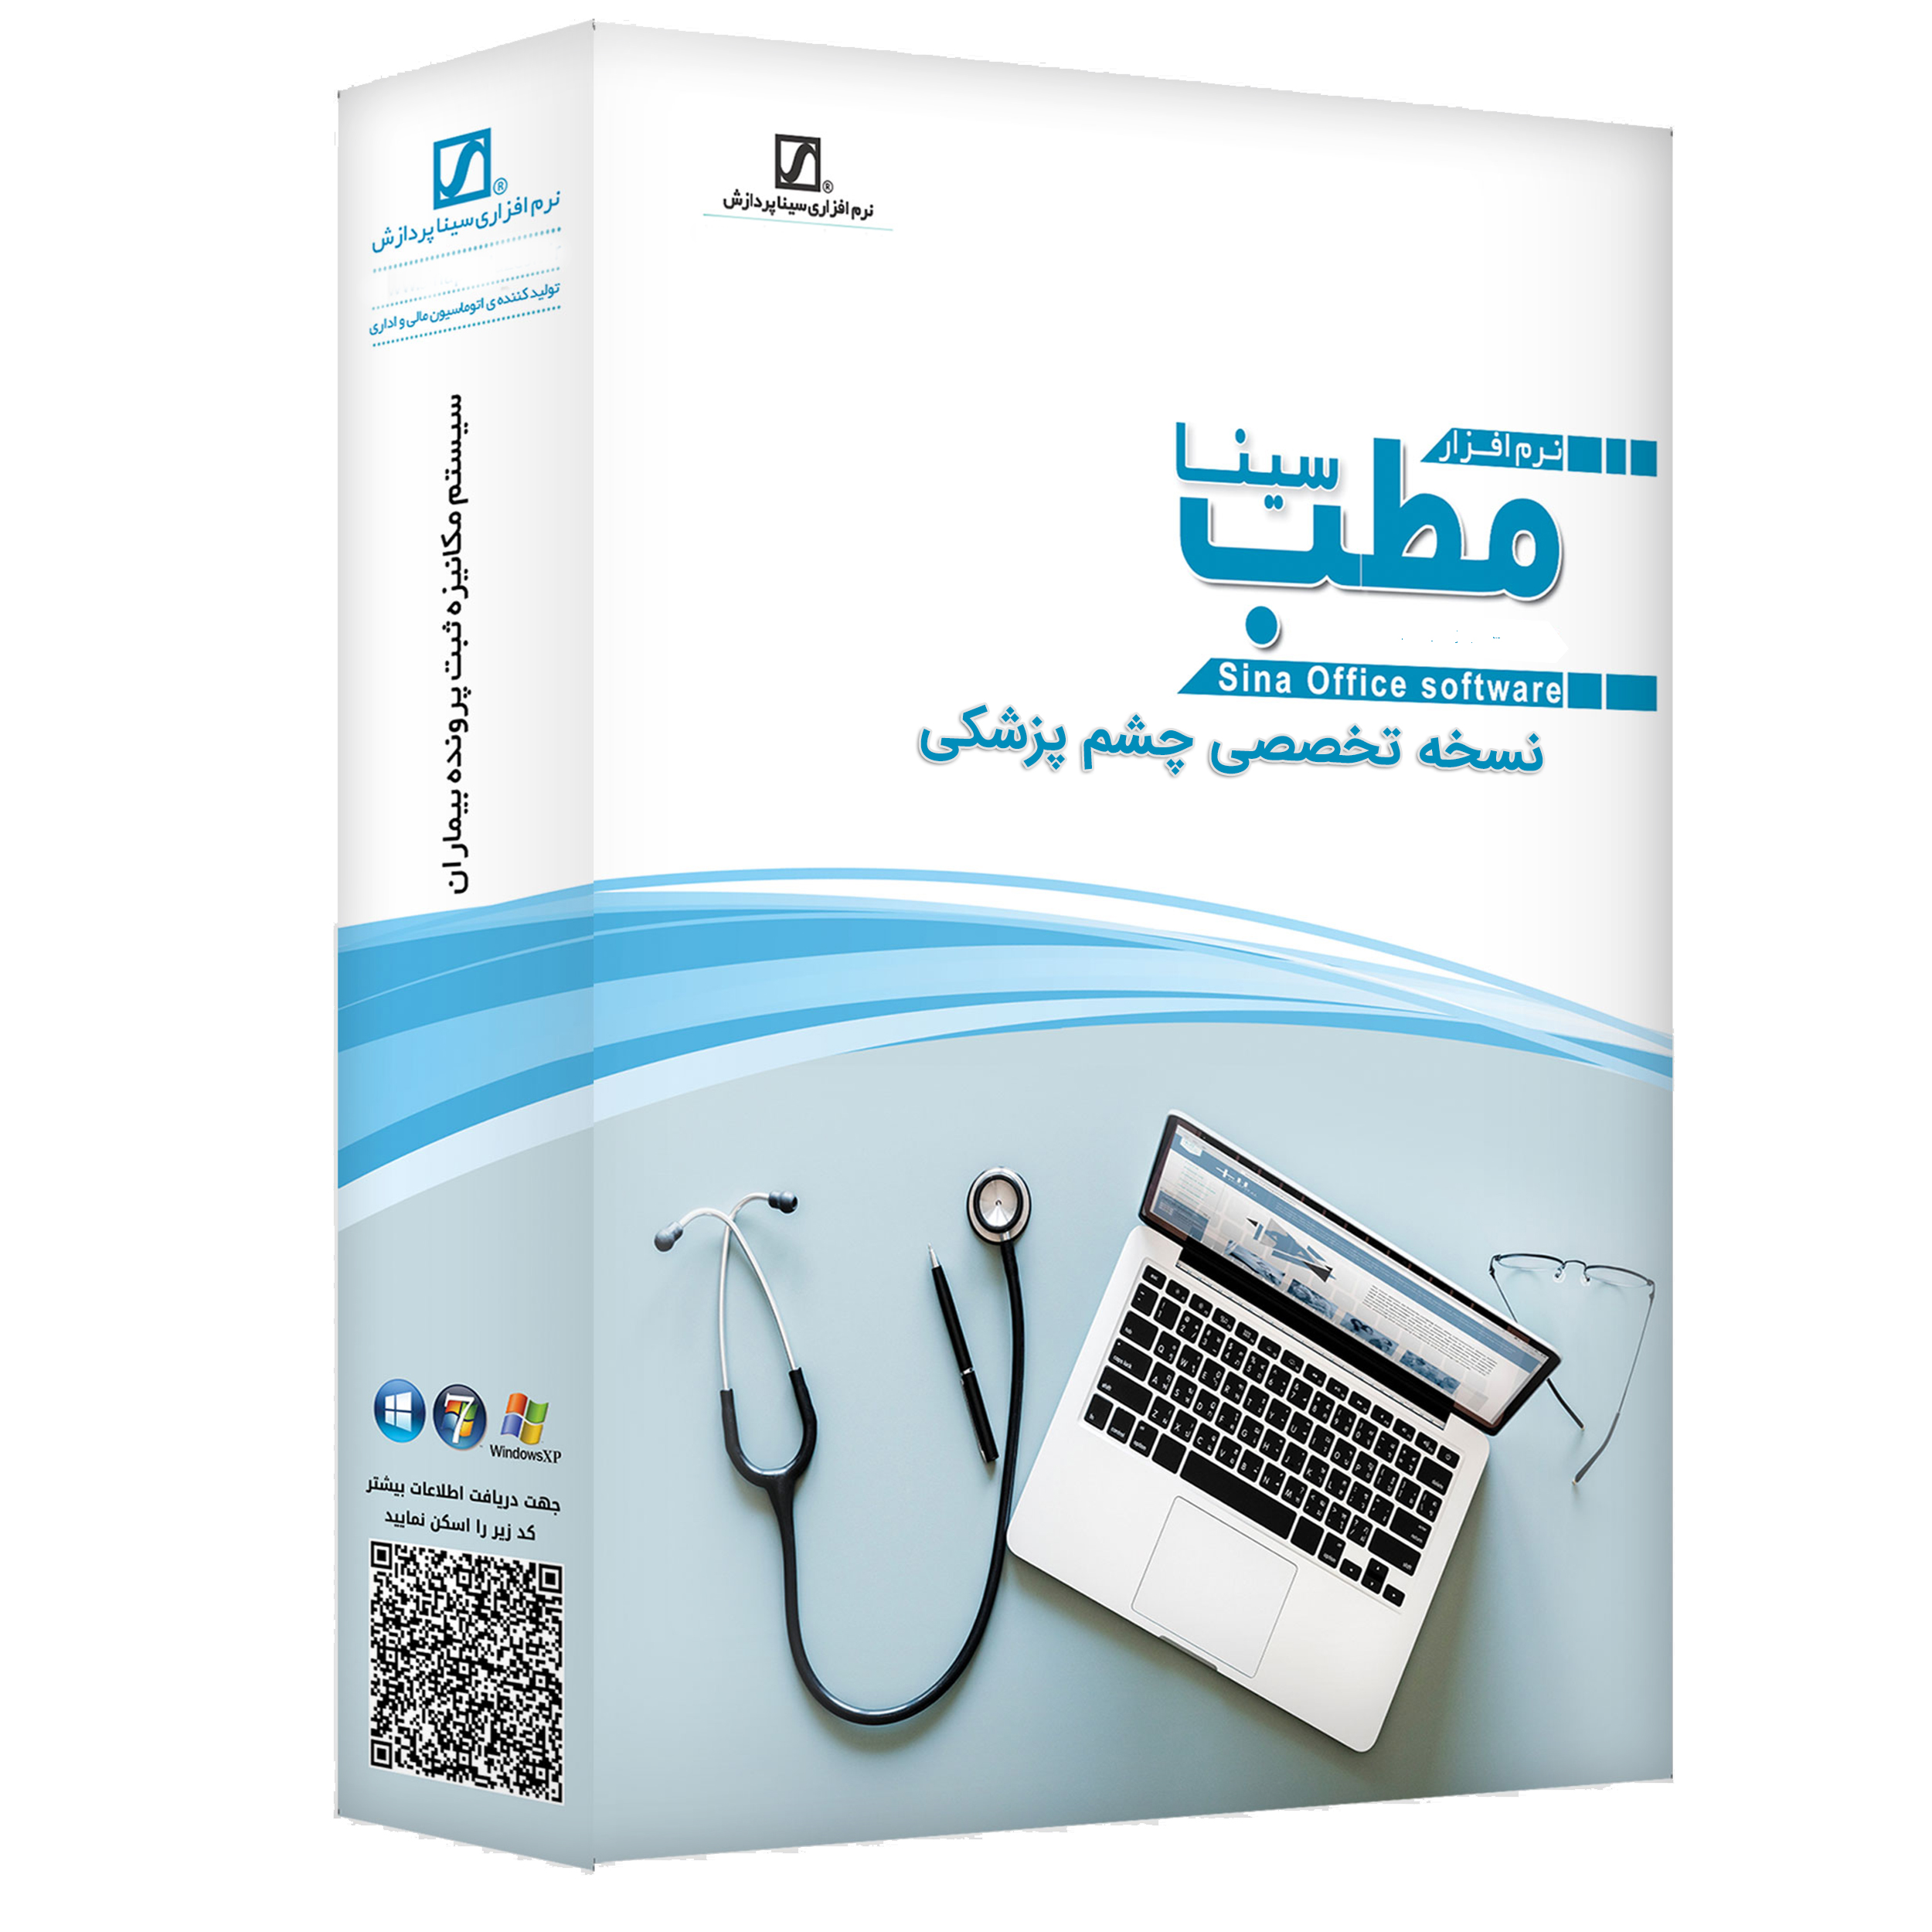 نرم افزار حسابداری مطب نسخه تخصصی چشم پزشکی نشر سیناپردازش